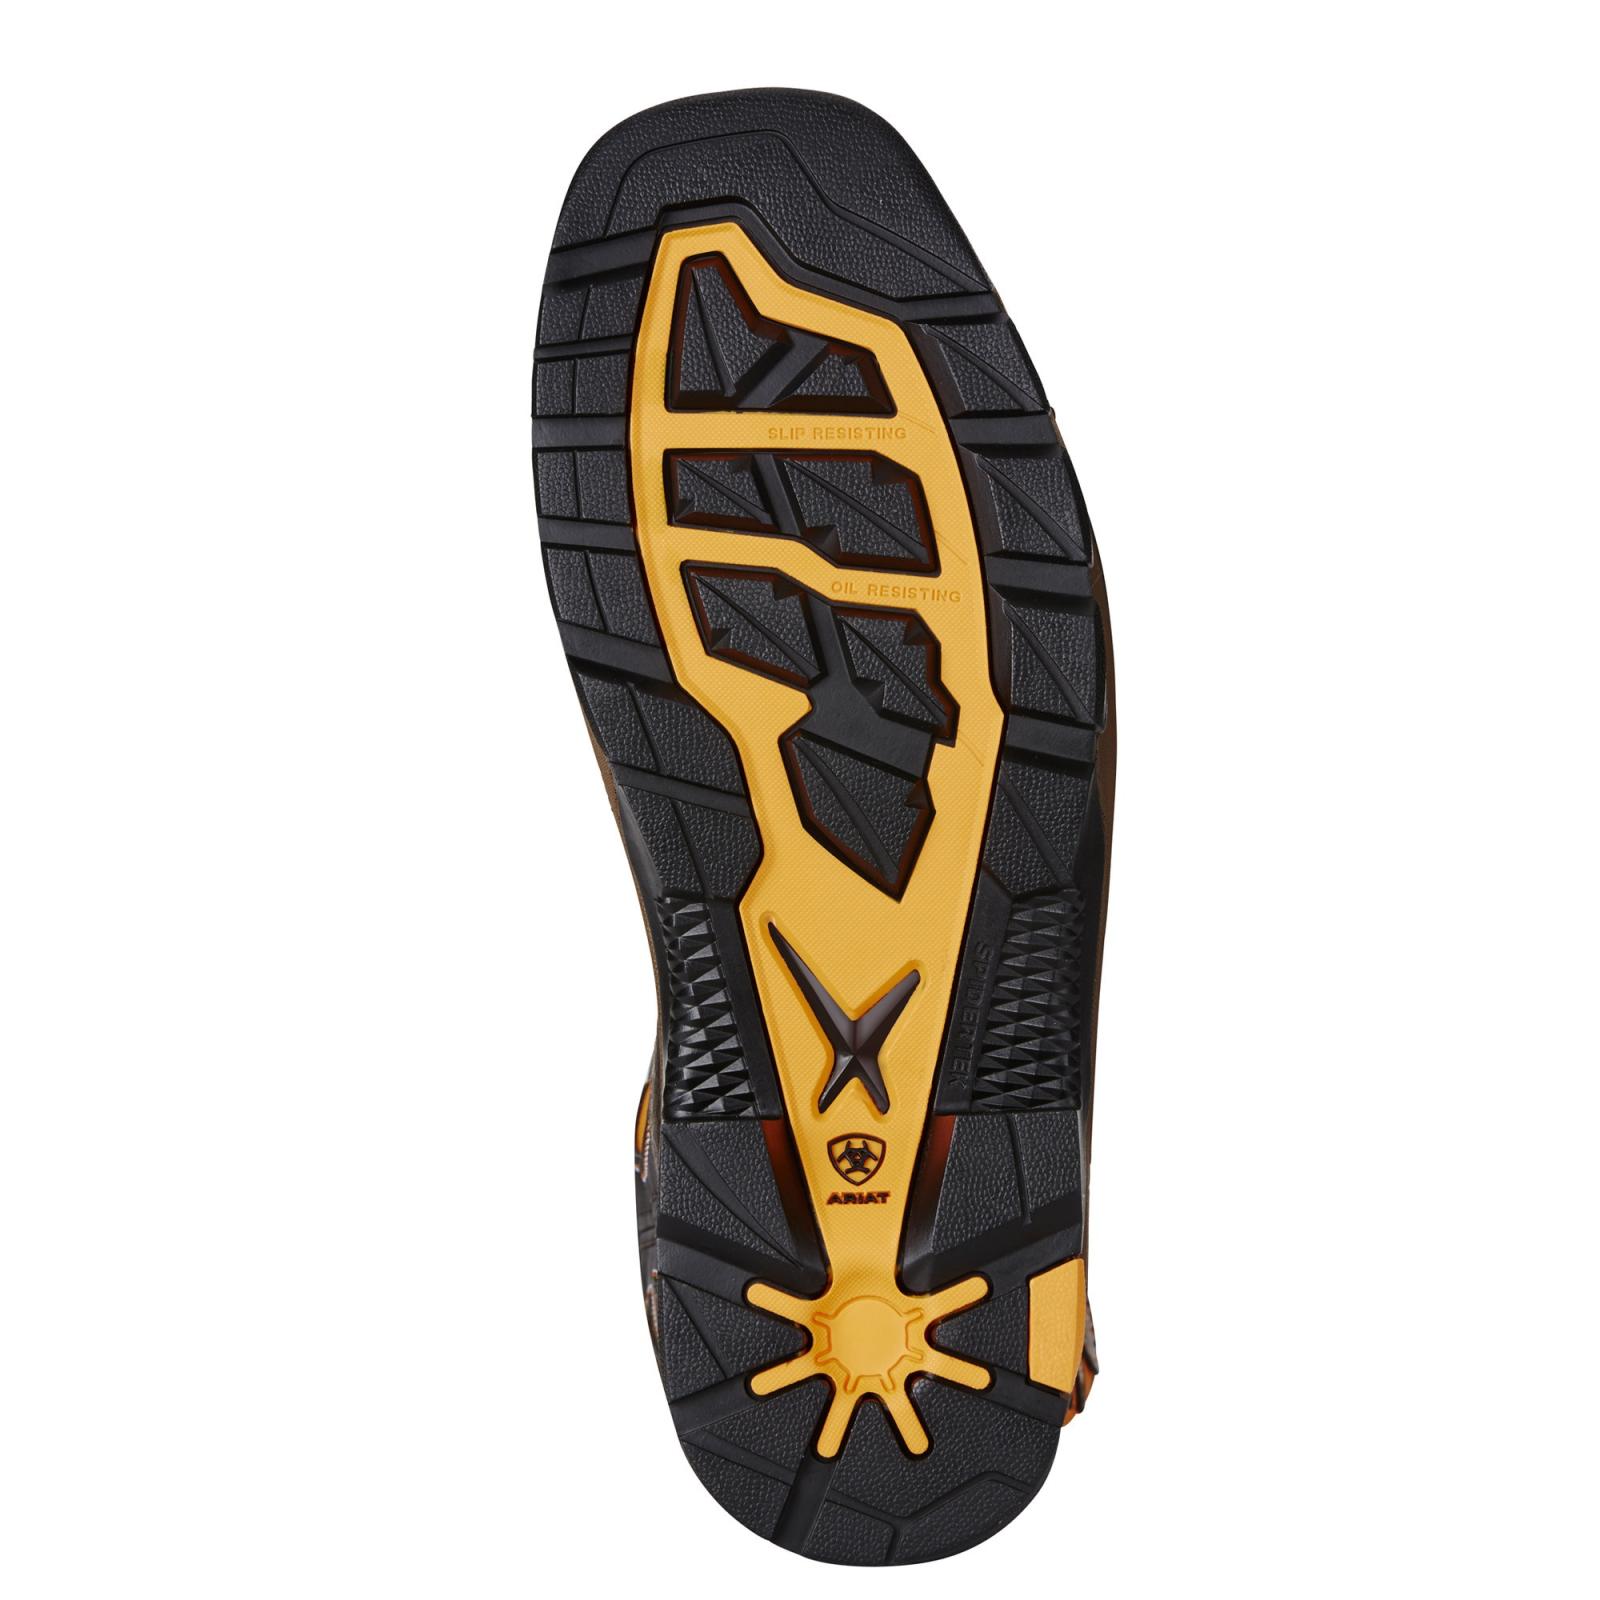 Ariat Men's Intrepid VentTEK Composite Toe Work Boot 